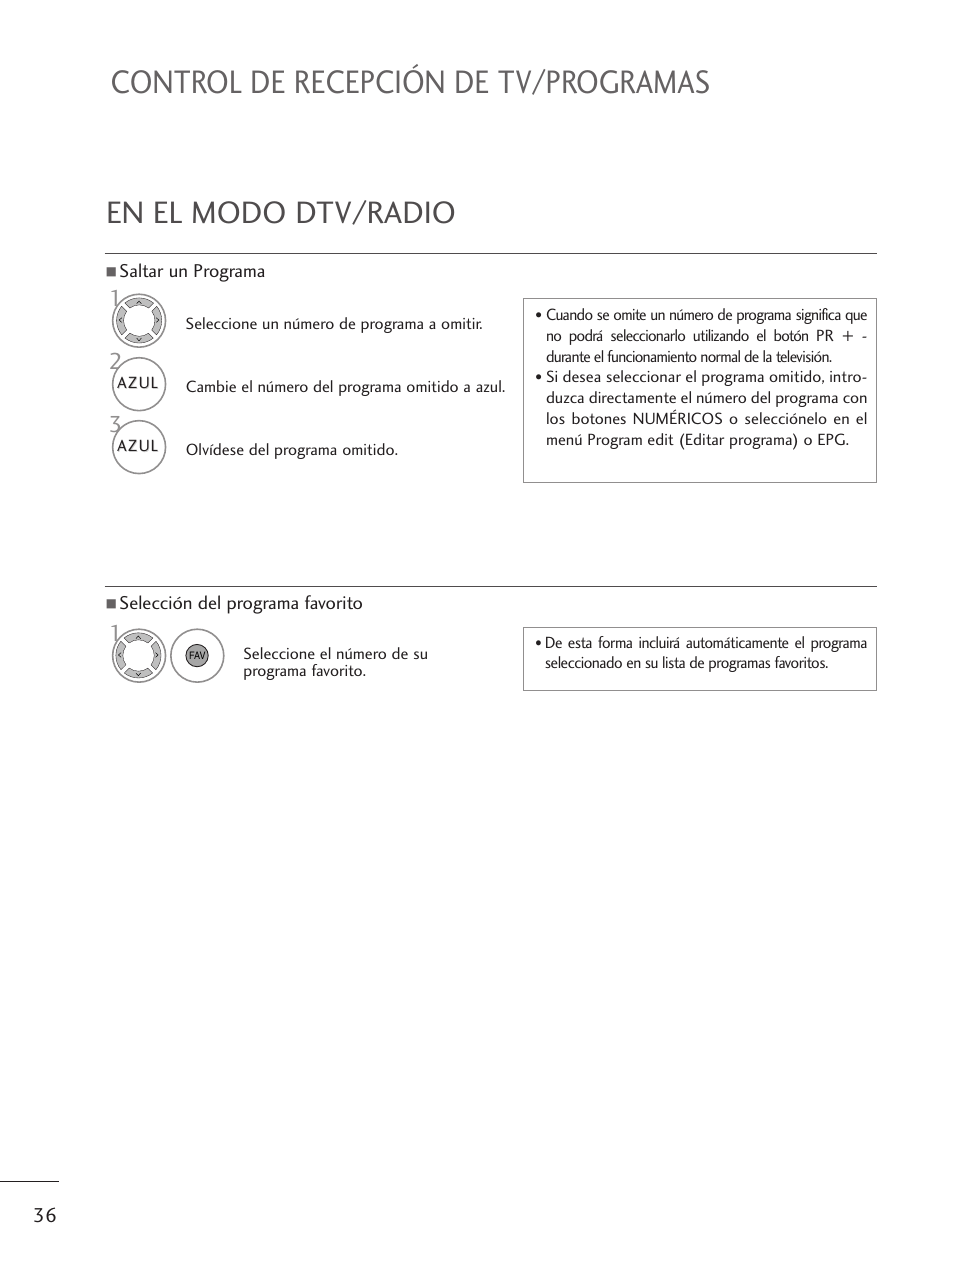 En el modo dtv/radio, Control de recepción de tv/programas | LG M1962D-PZ Manual del usuario | Página 38 / 124